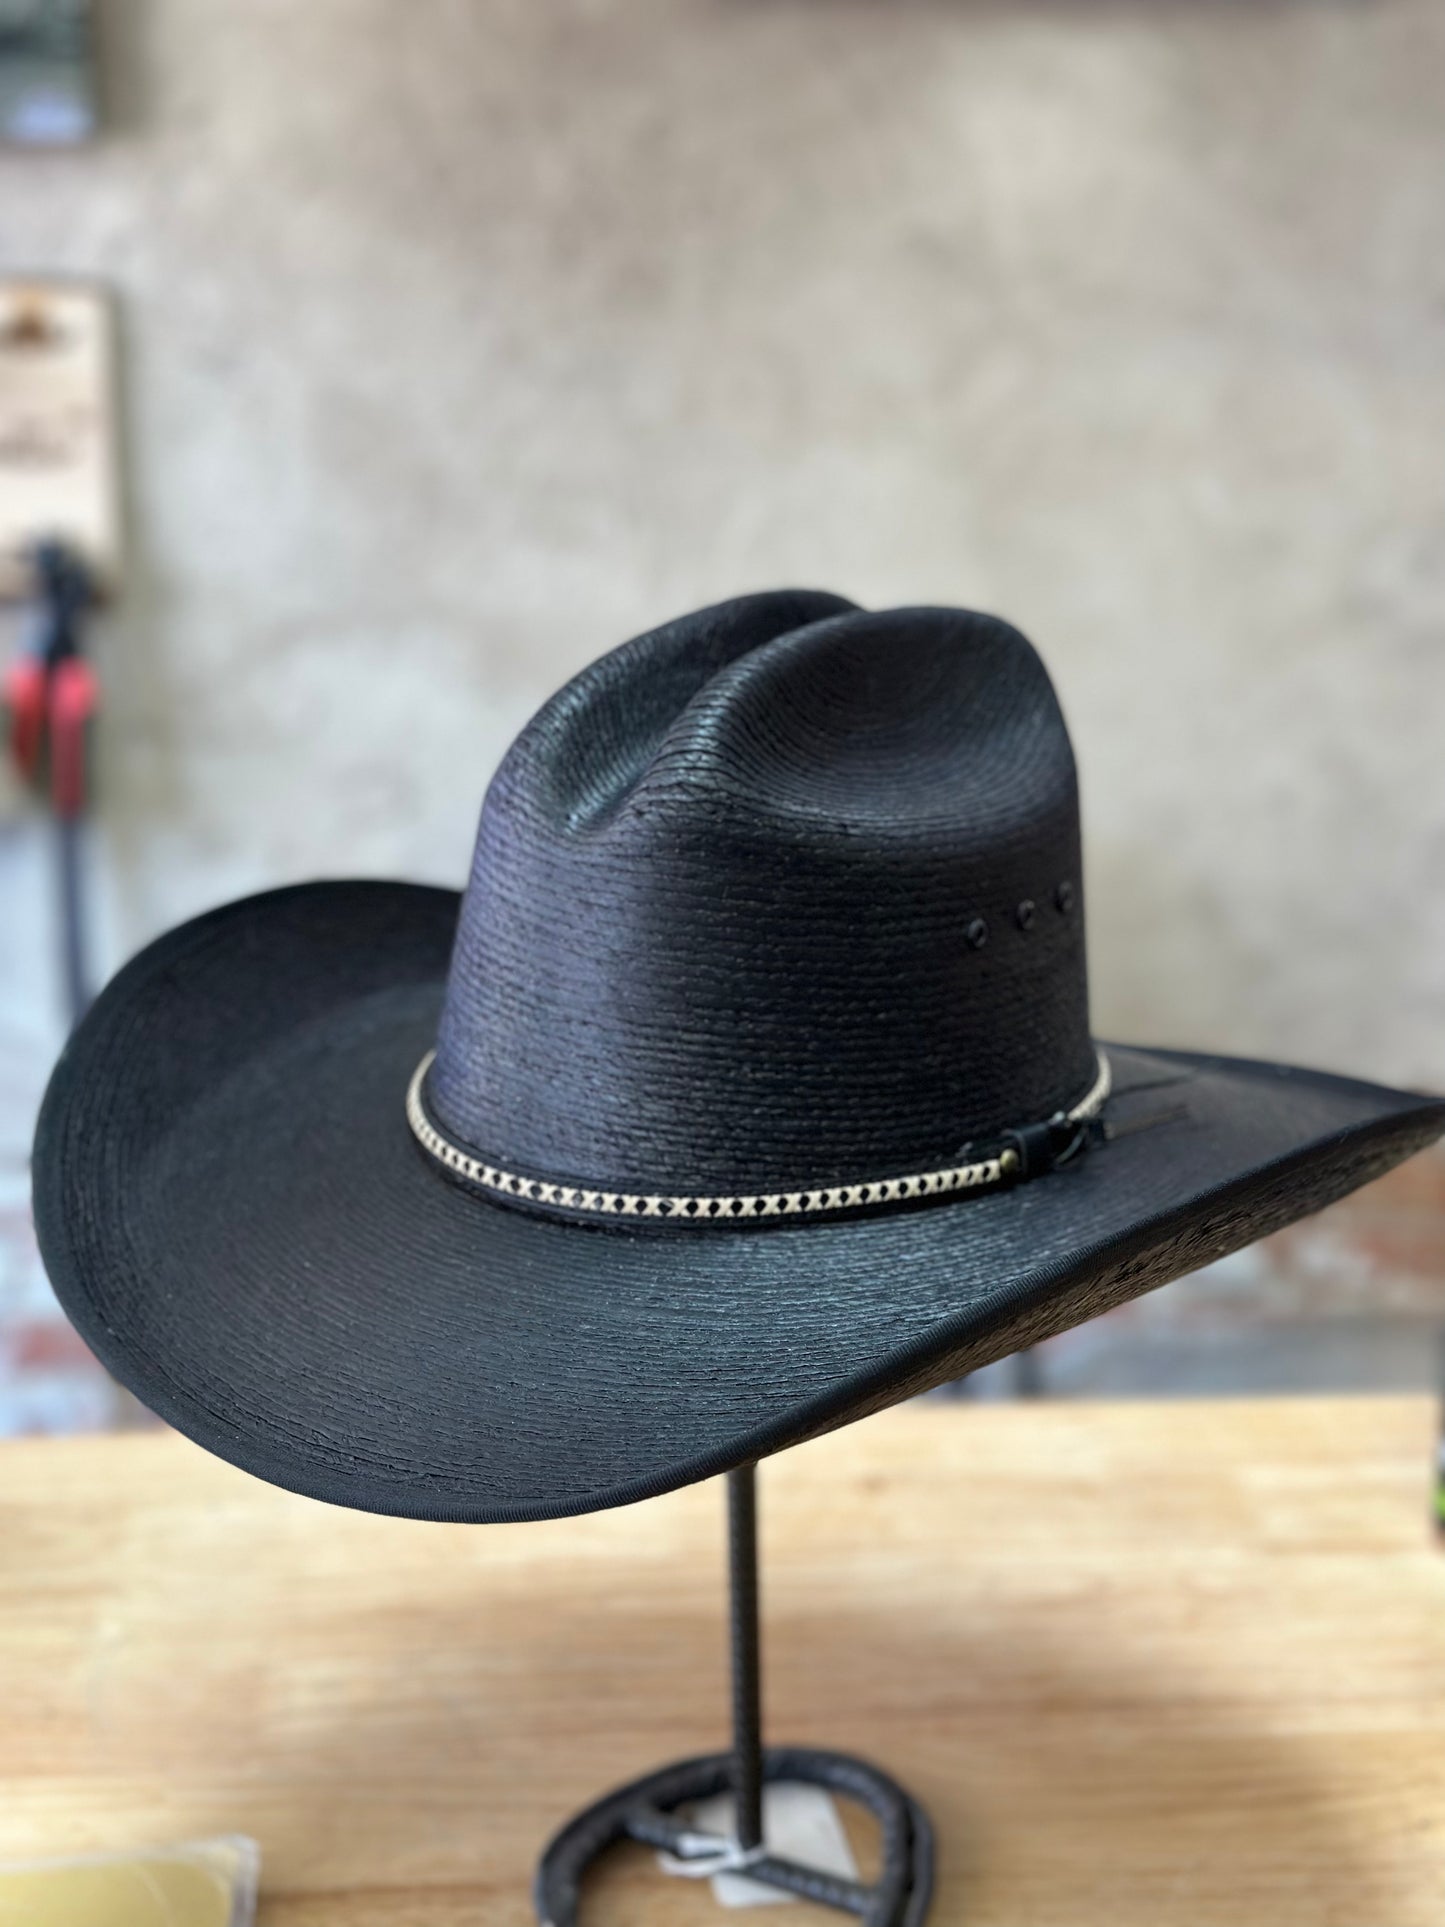 Resistol Asphalt Cowboy Palm Cowboy Hat - Jason Aldean Collection ...